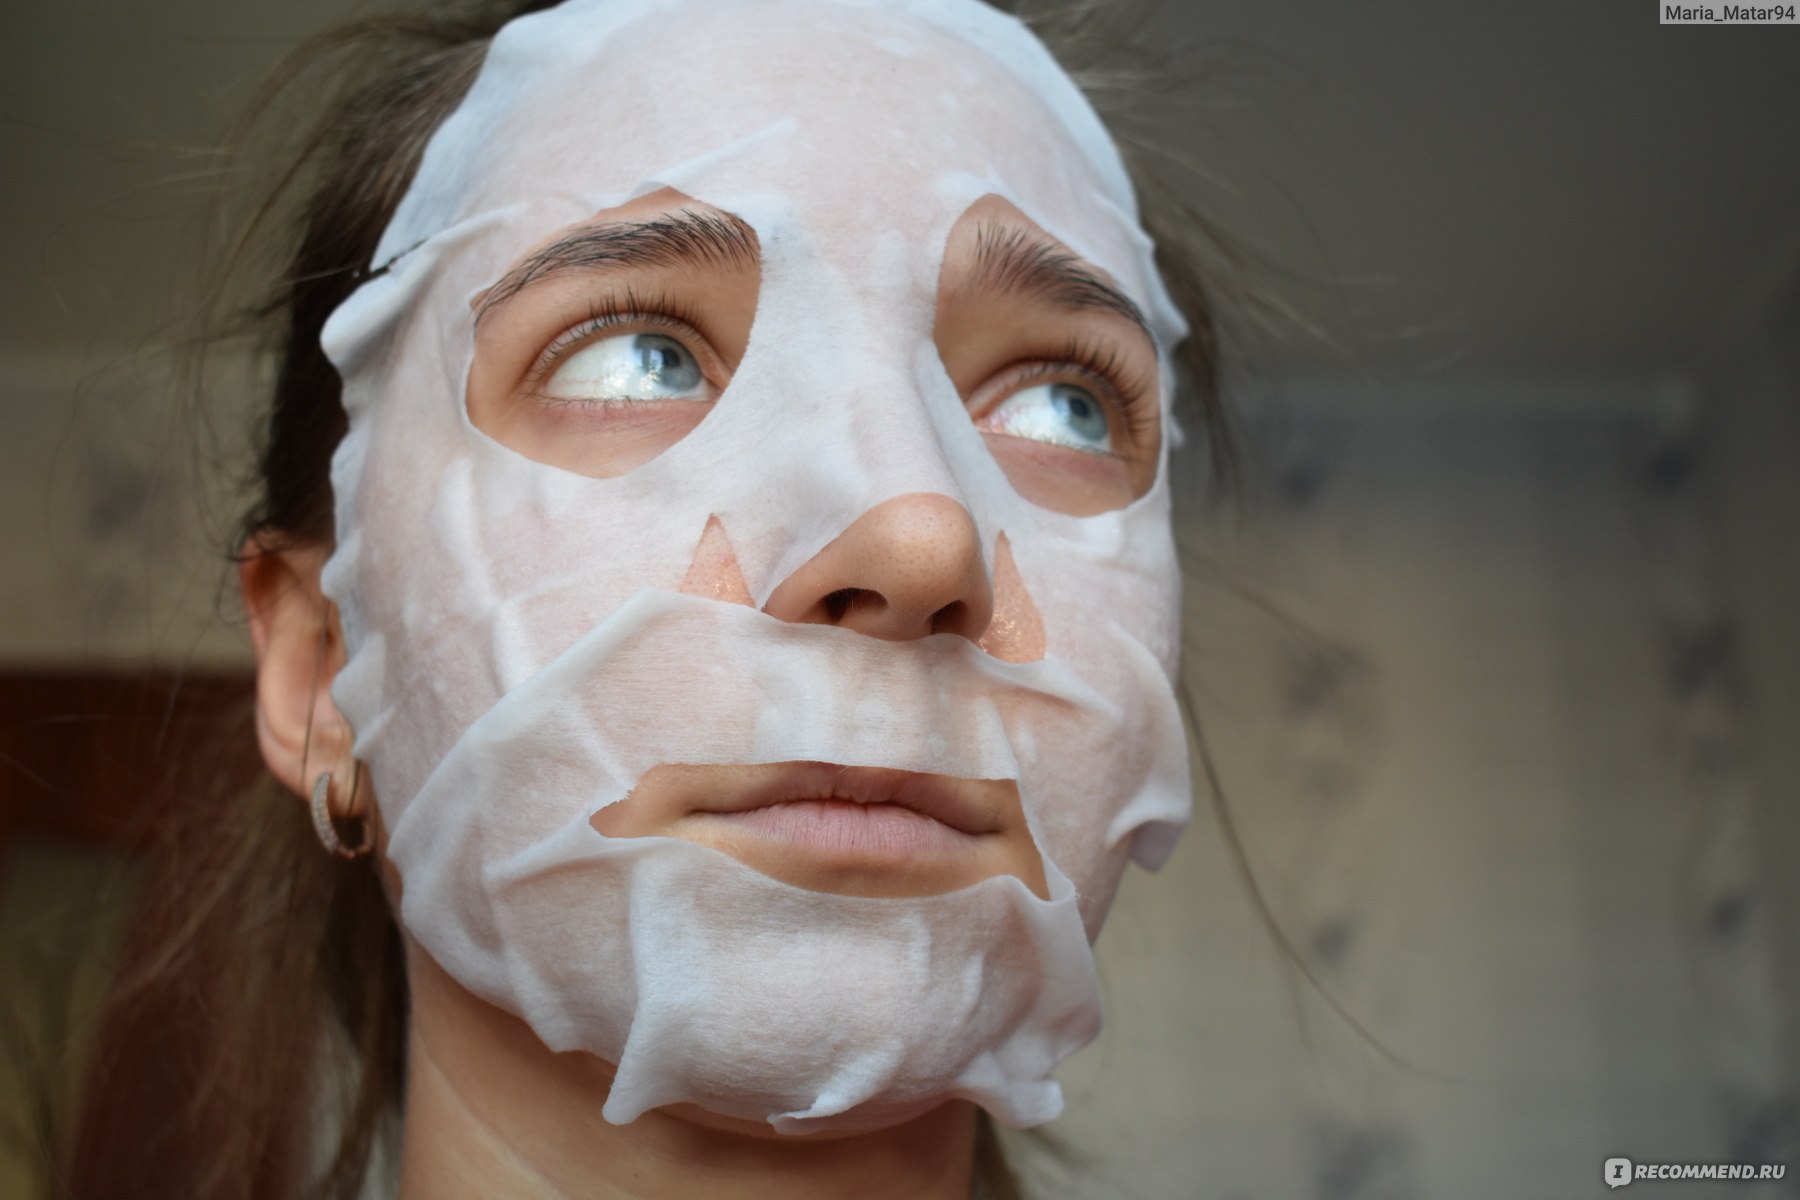 После тканевой маски нужно ли мыть лицо. Надо ли умываться после тканевой маски. Нужно ли умываться после тканевой маски для лица. Нужно ли мыть лицо после тканевой маски. Нужно ли смывать тканевую маску для лица после применения.